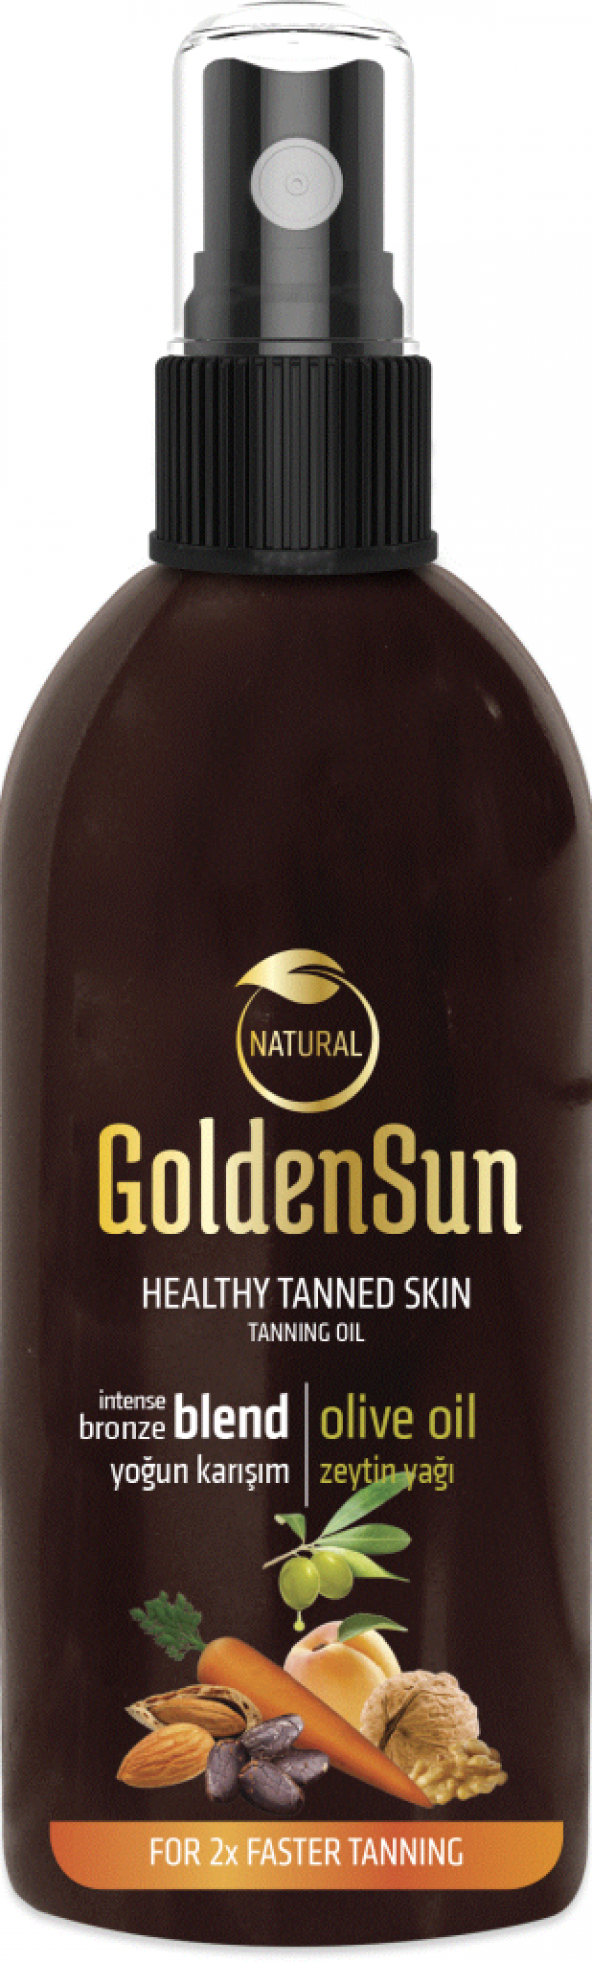 GOLDEN SUN Yoğun Bronzlaştırıcı + Zeytin Yağı 150ml